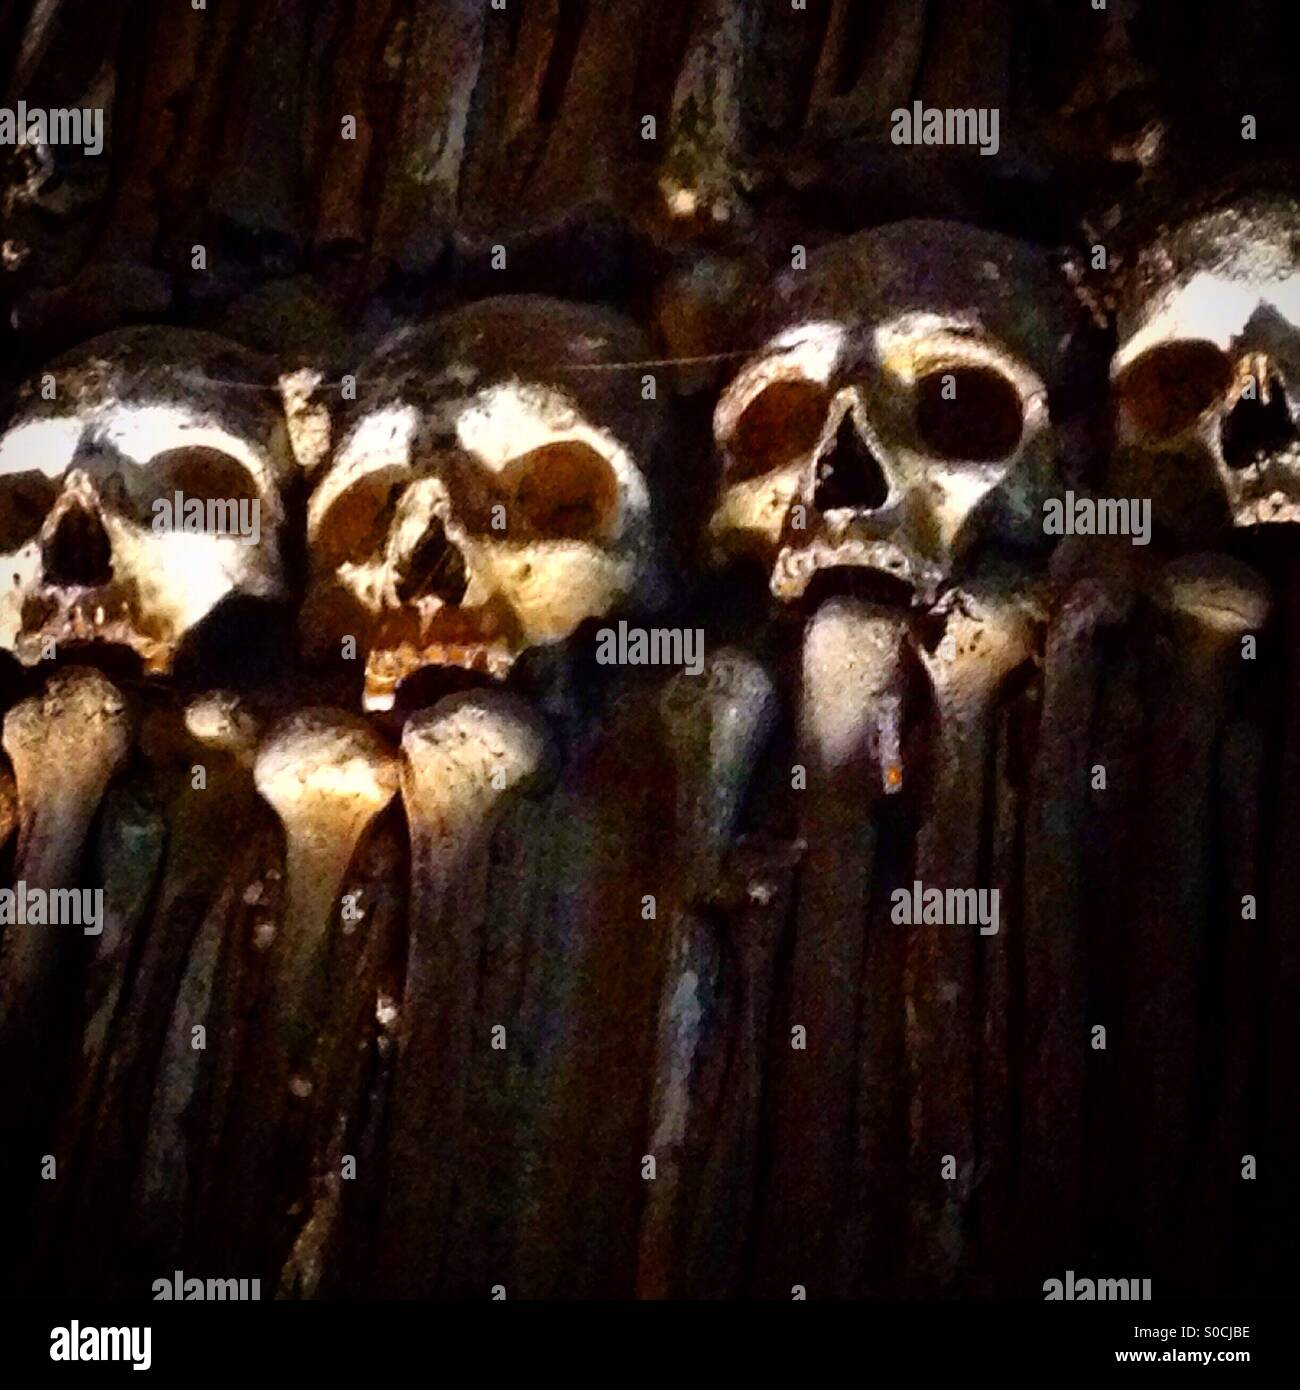 Human skulls and bones decorate yhe Capela dos Ossos ( Bones Chapel ) in Evora, Portugal Stock Photo